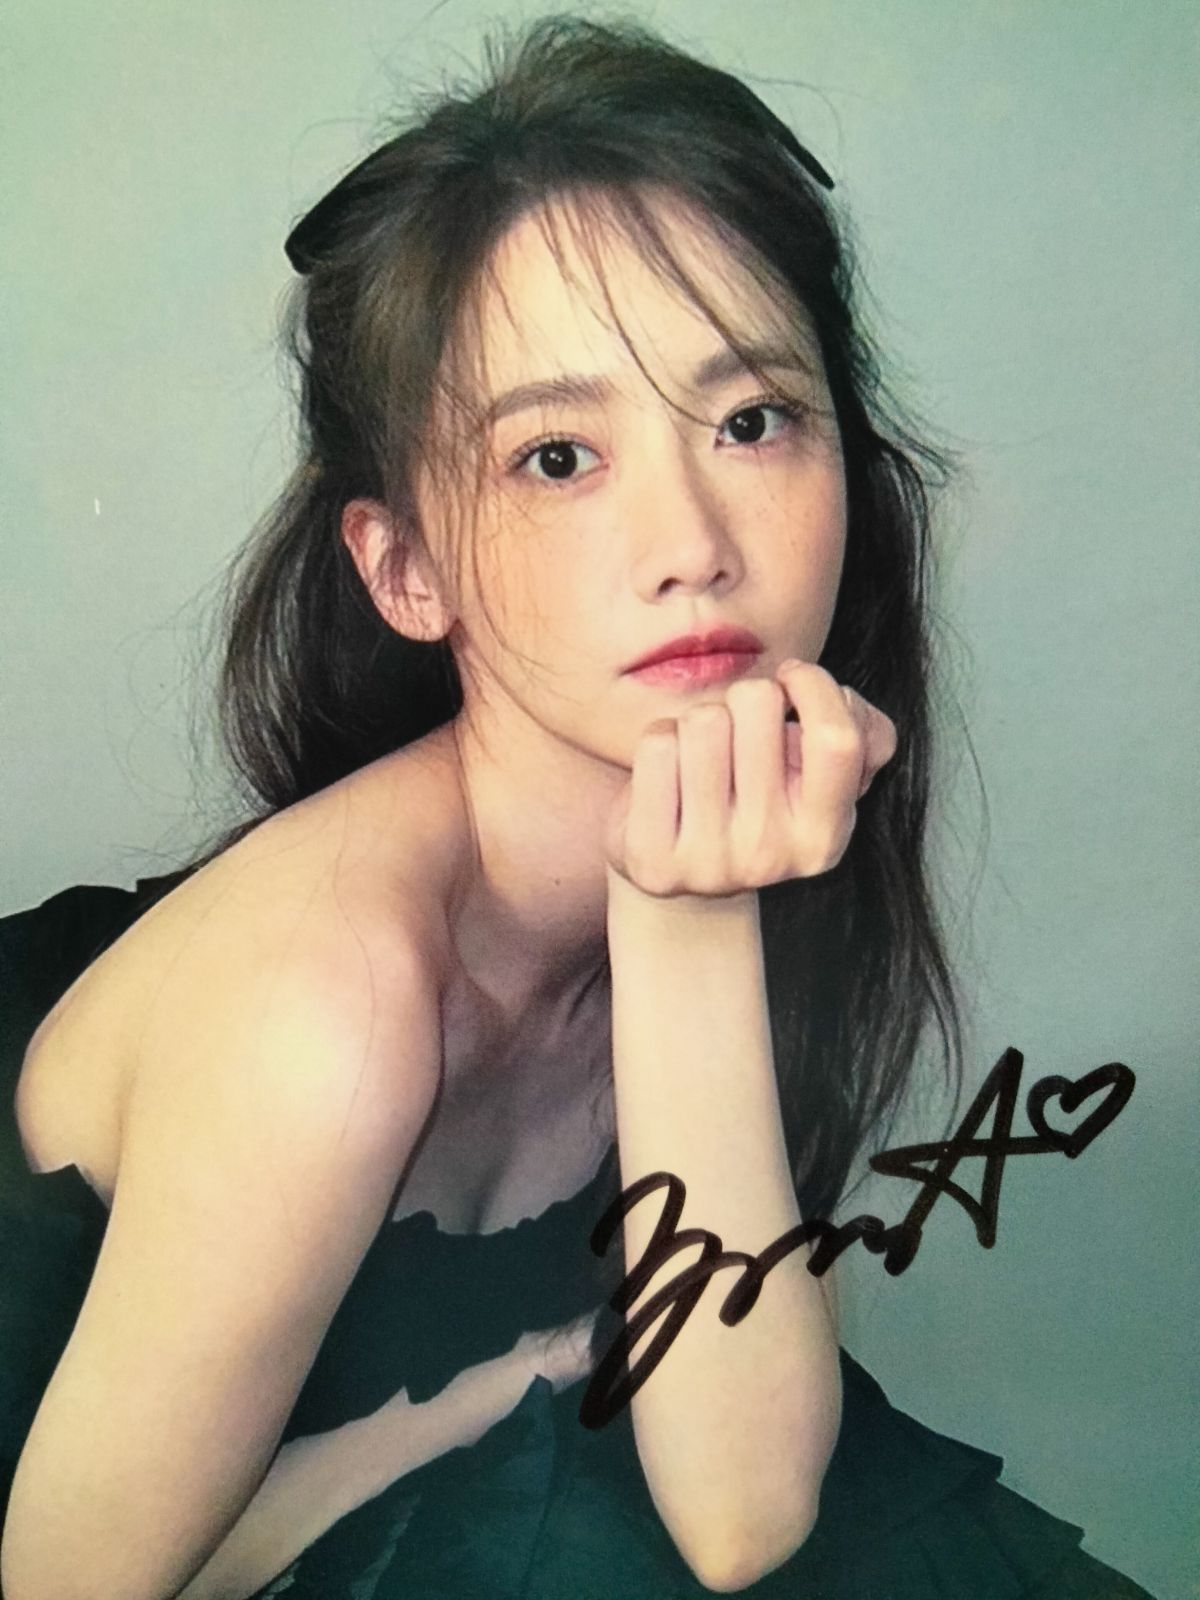 ユナ直筆サイン入り2Lサイズ写真…YoonA…少女時代… - メルカリ